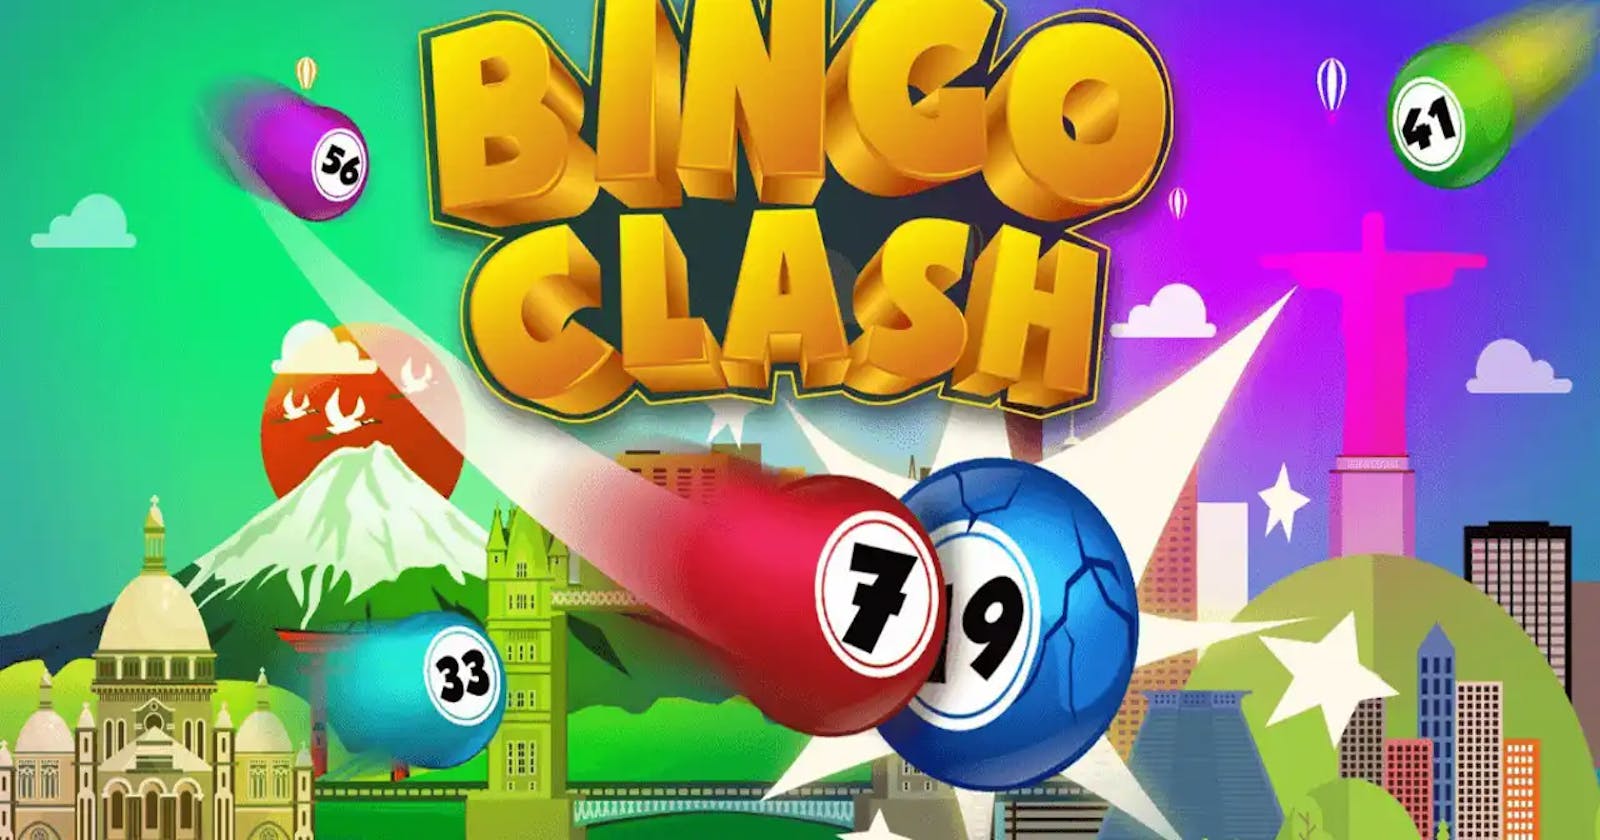 Understanding: Is Bingo Clash Legit?